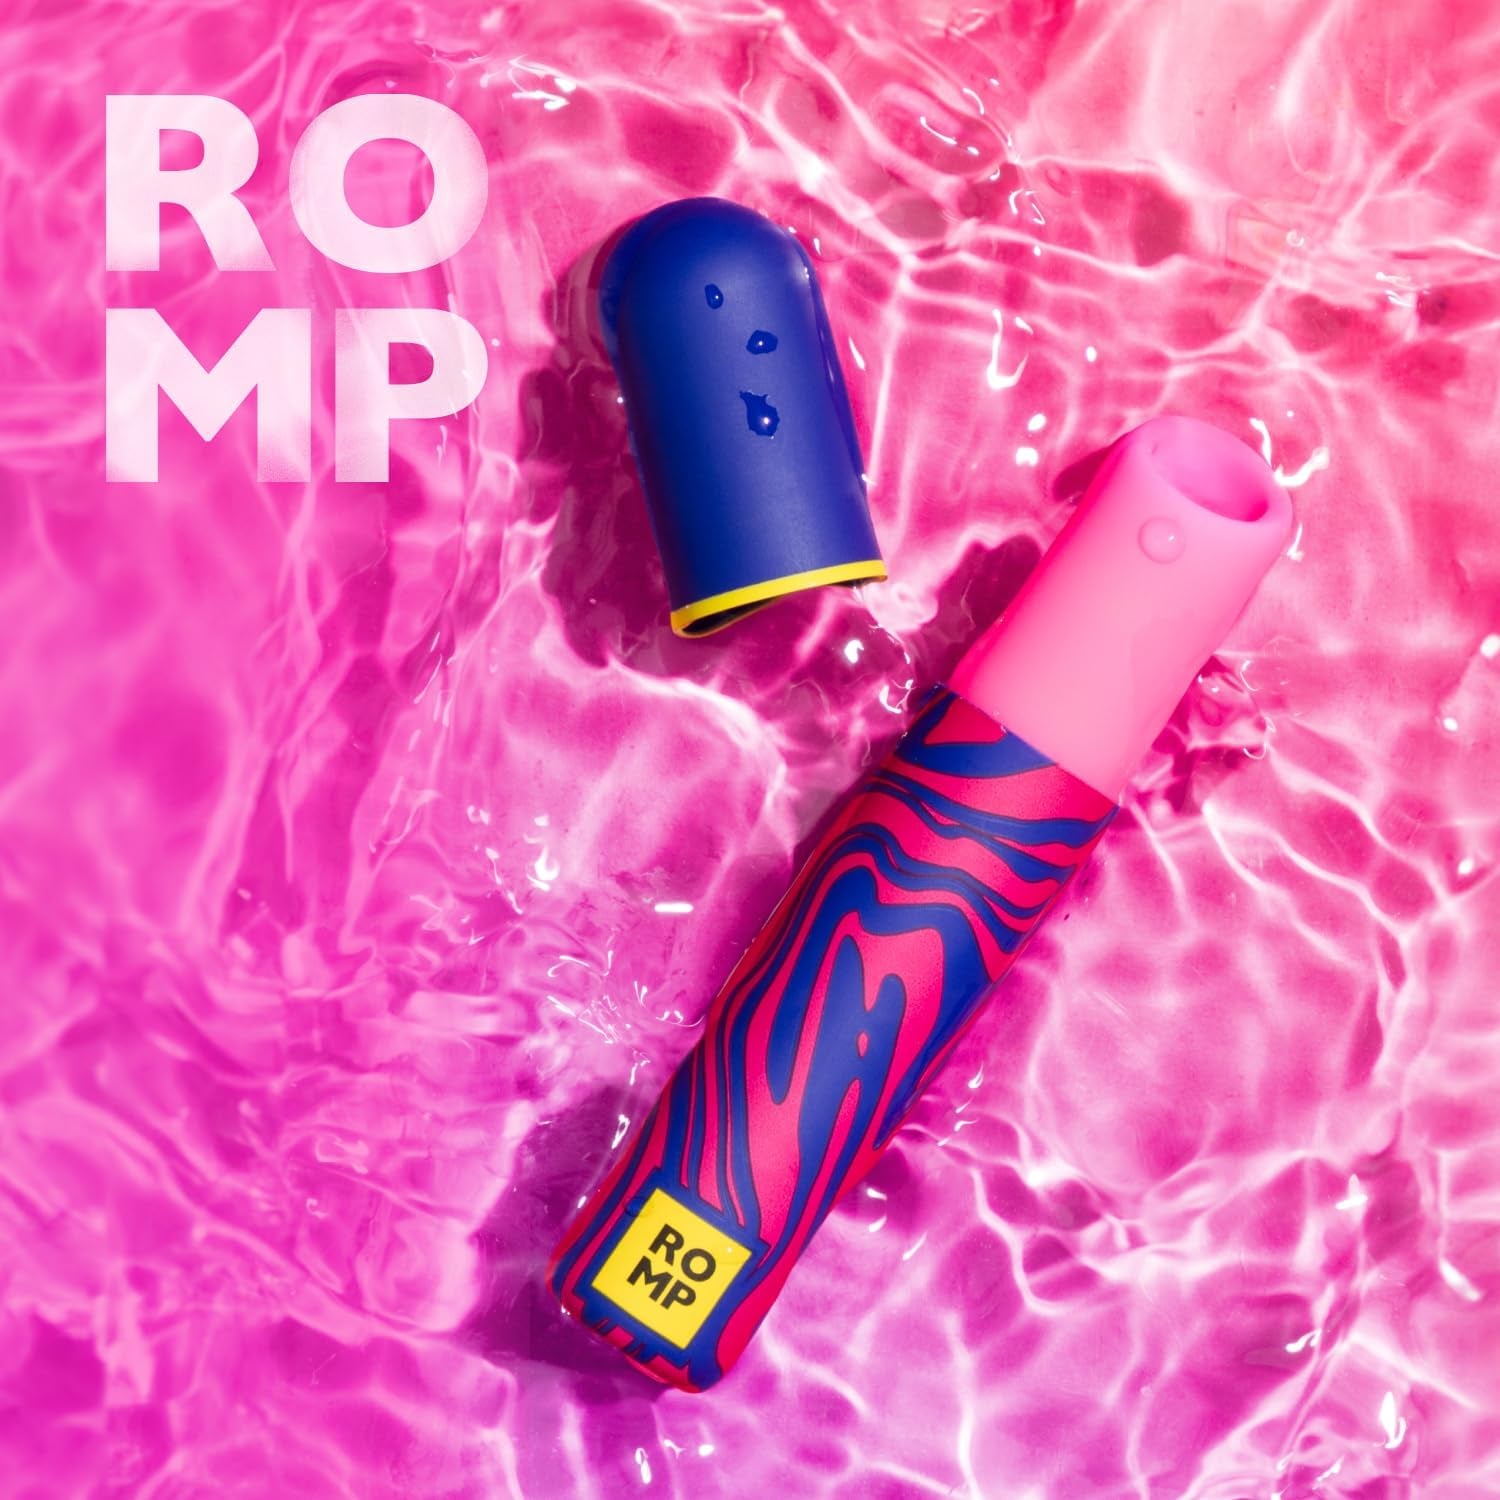 The Romp Lipstick Clit Sucker Waterproofing